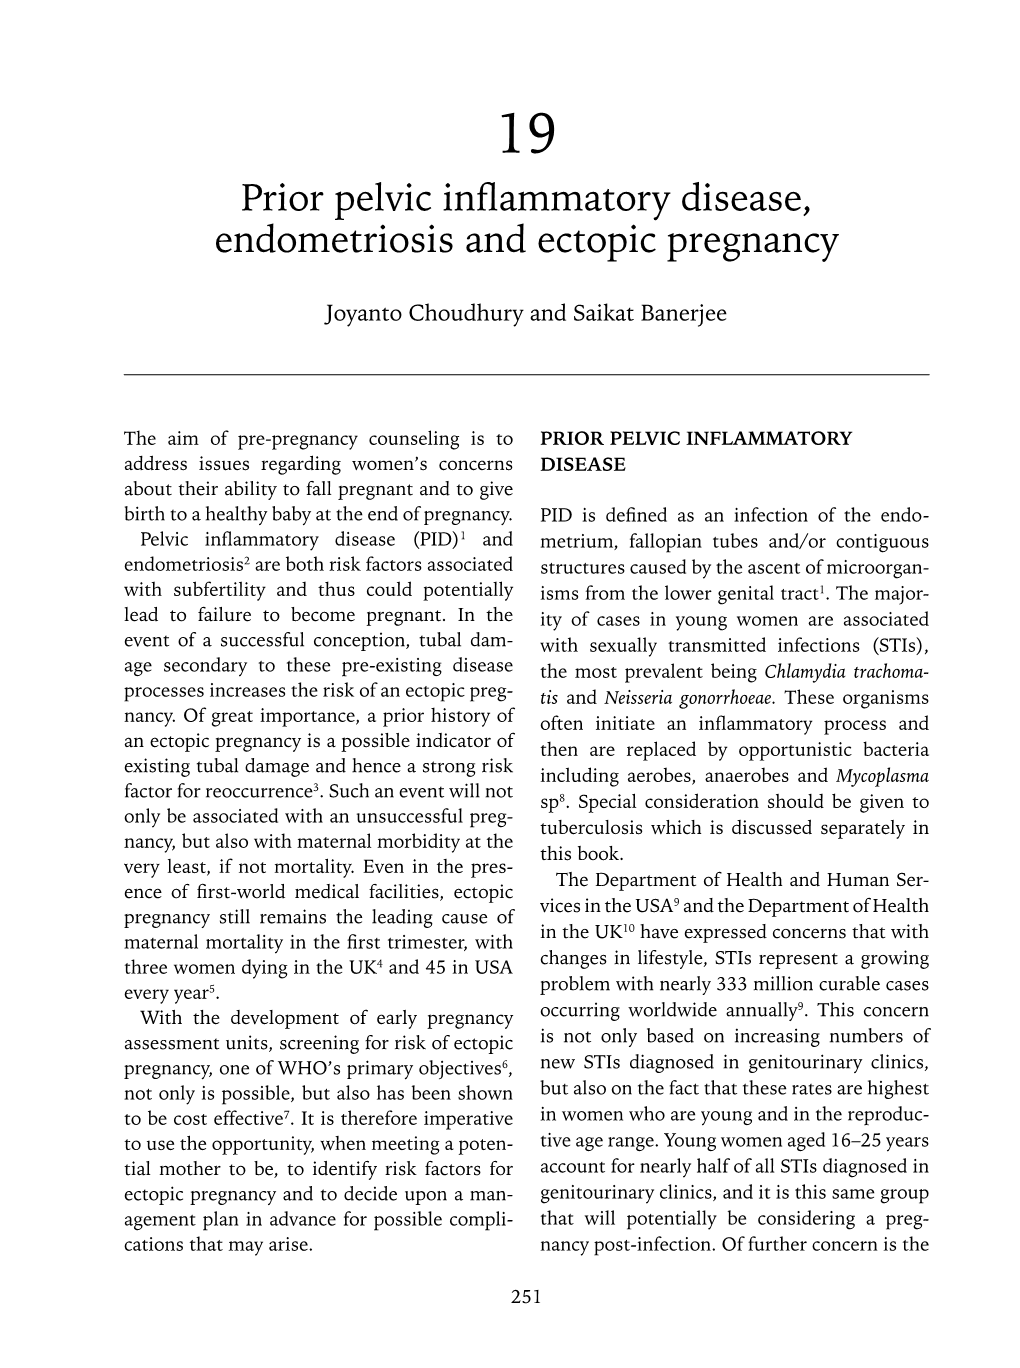 Prior Pelvic Inflammatory Disease, Endometriosis and Ectopic Pregnancy